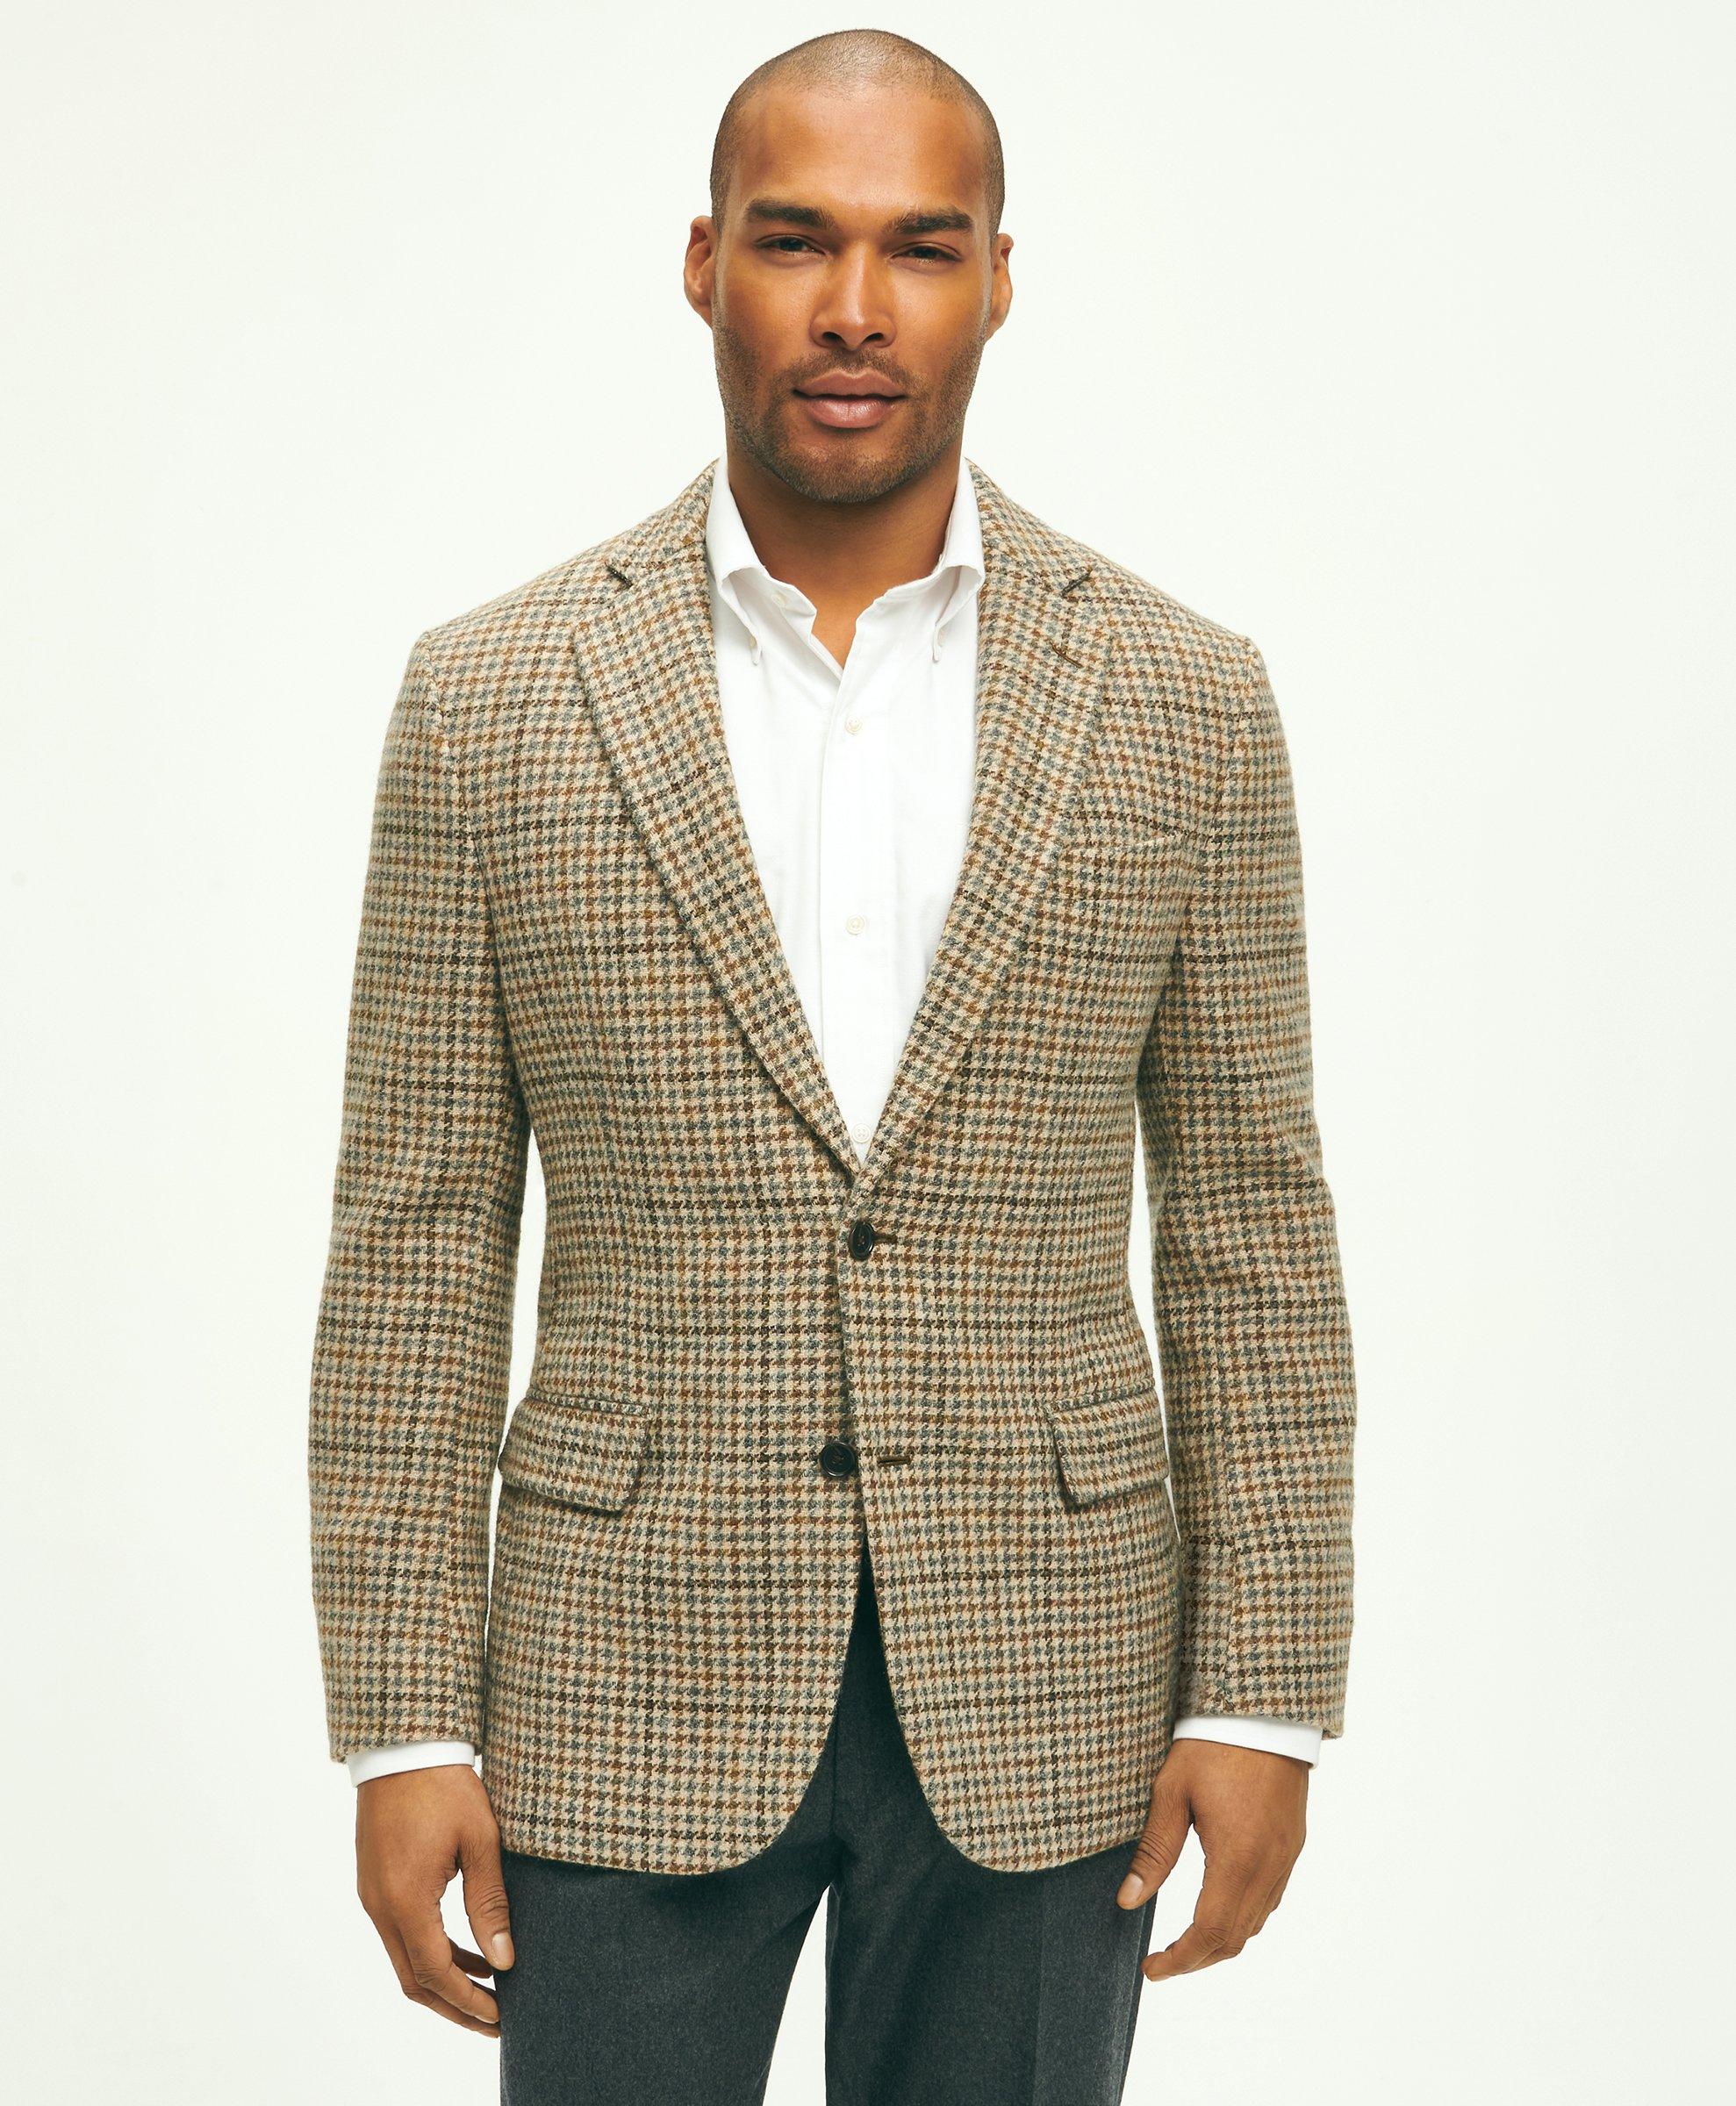 Men's Sport Coats & Blazers